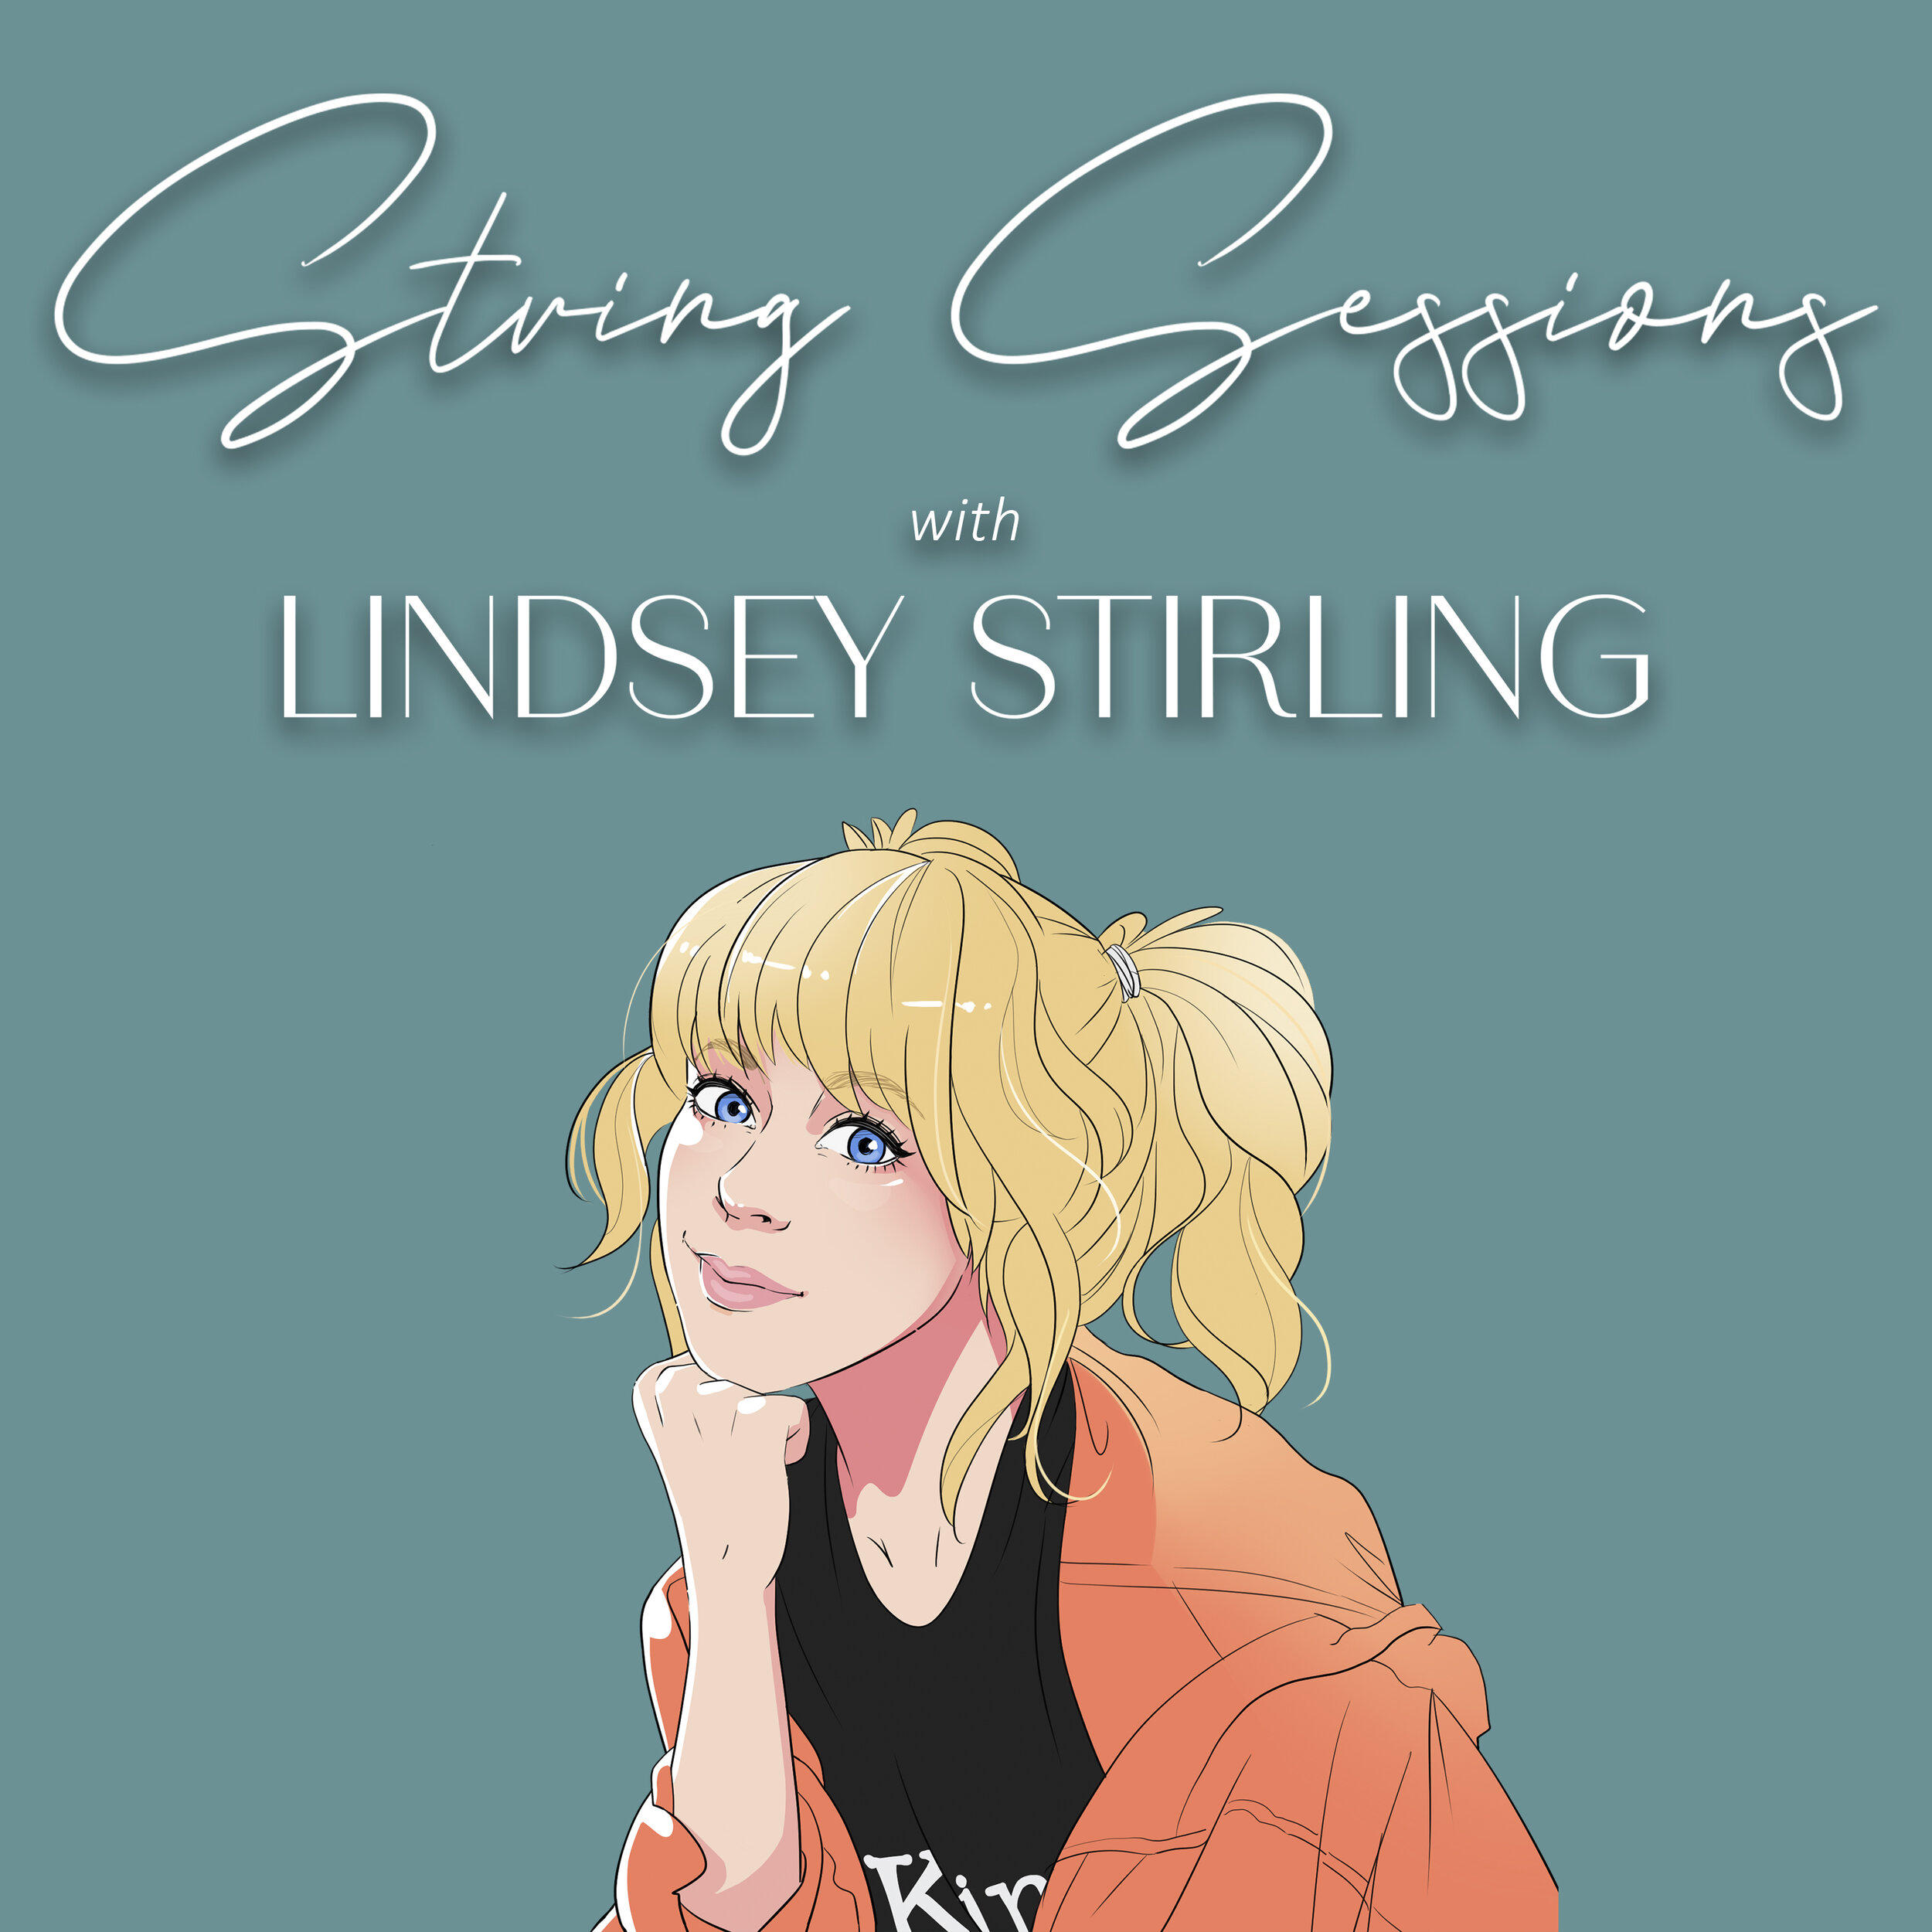 Lindsey stirling